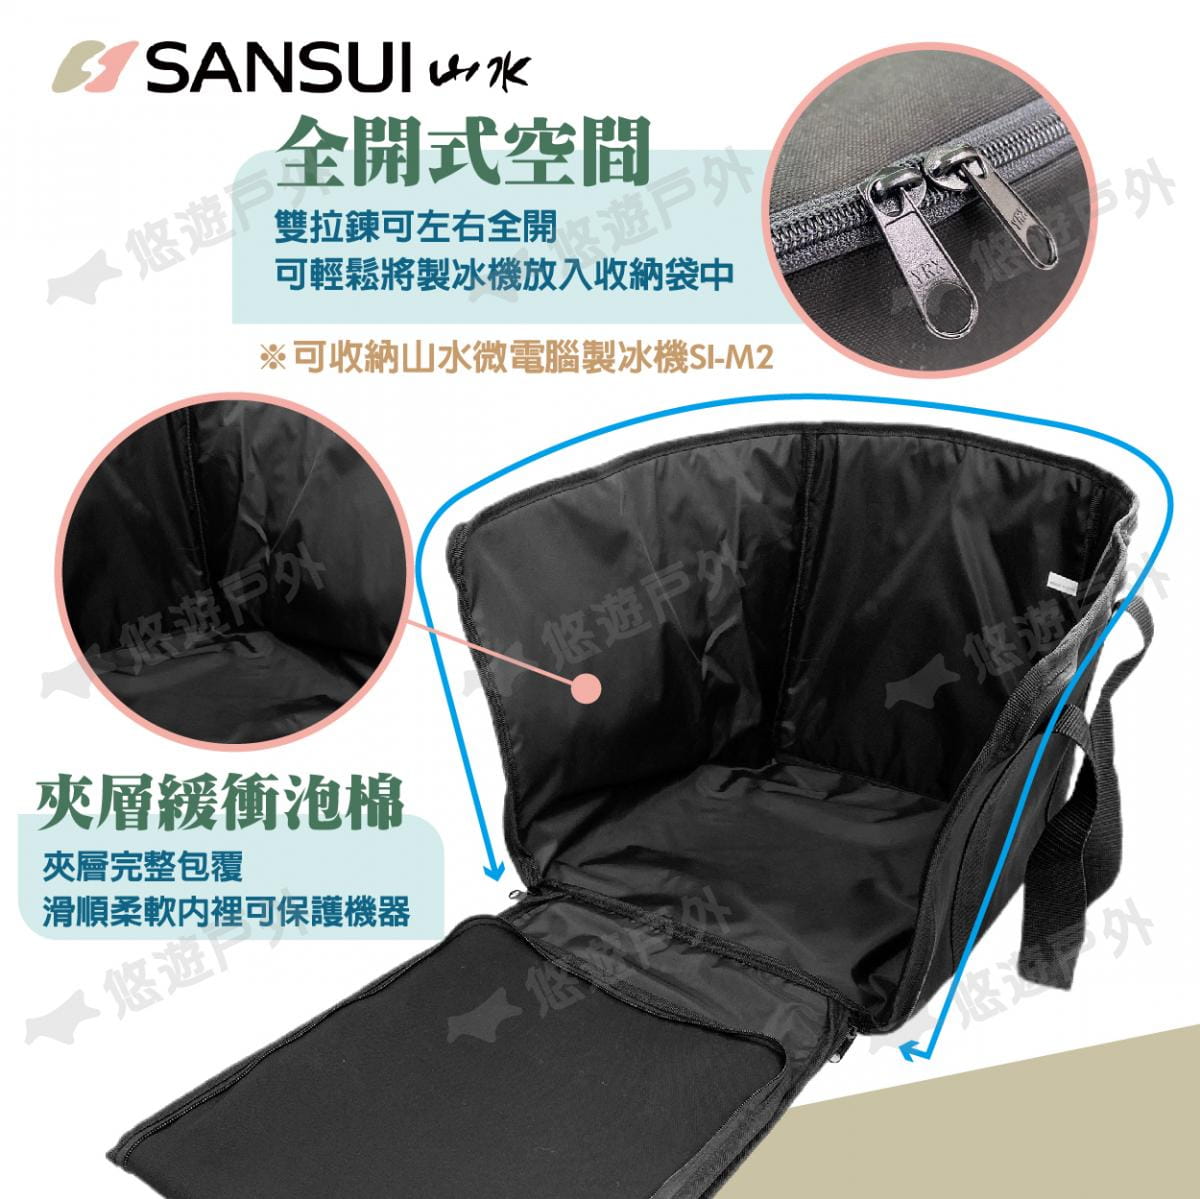 【SANSUI山水】製冰機收納袋 SI-M2 (悠遊戶外) 2